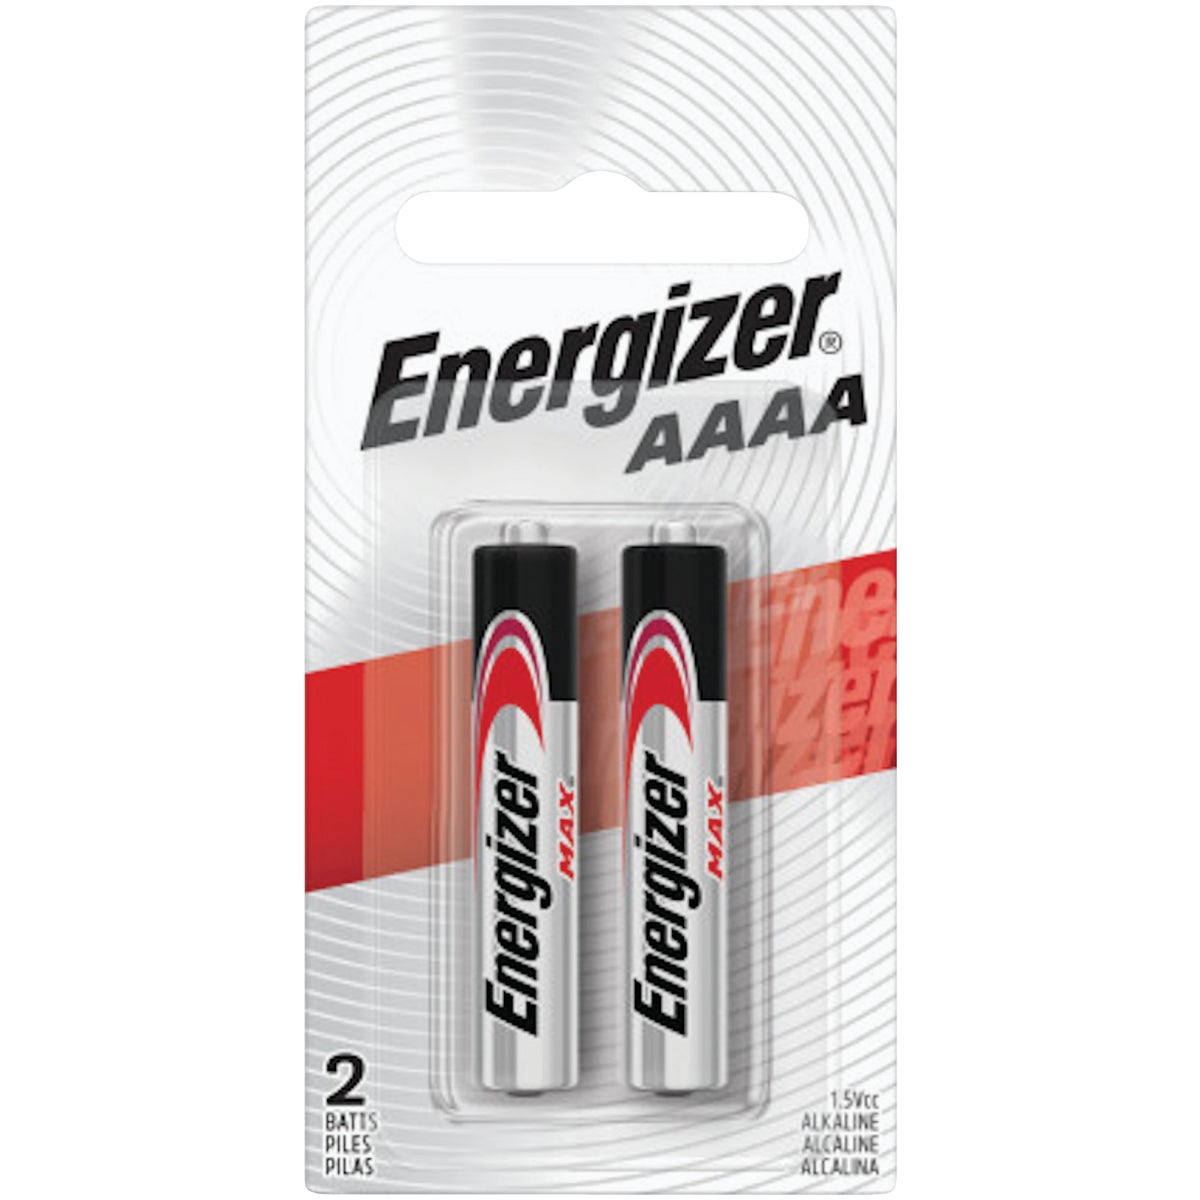 Energizer AAAA Alkaline Battery (2-Pack)